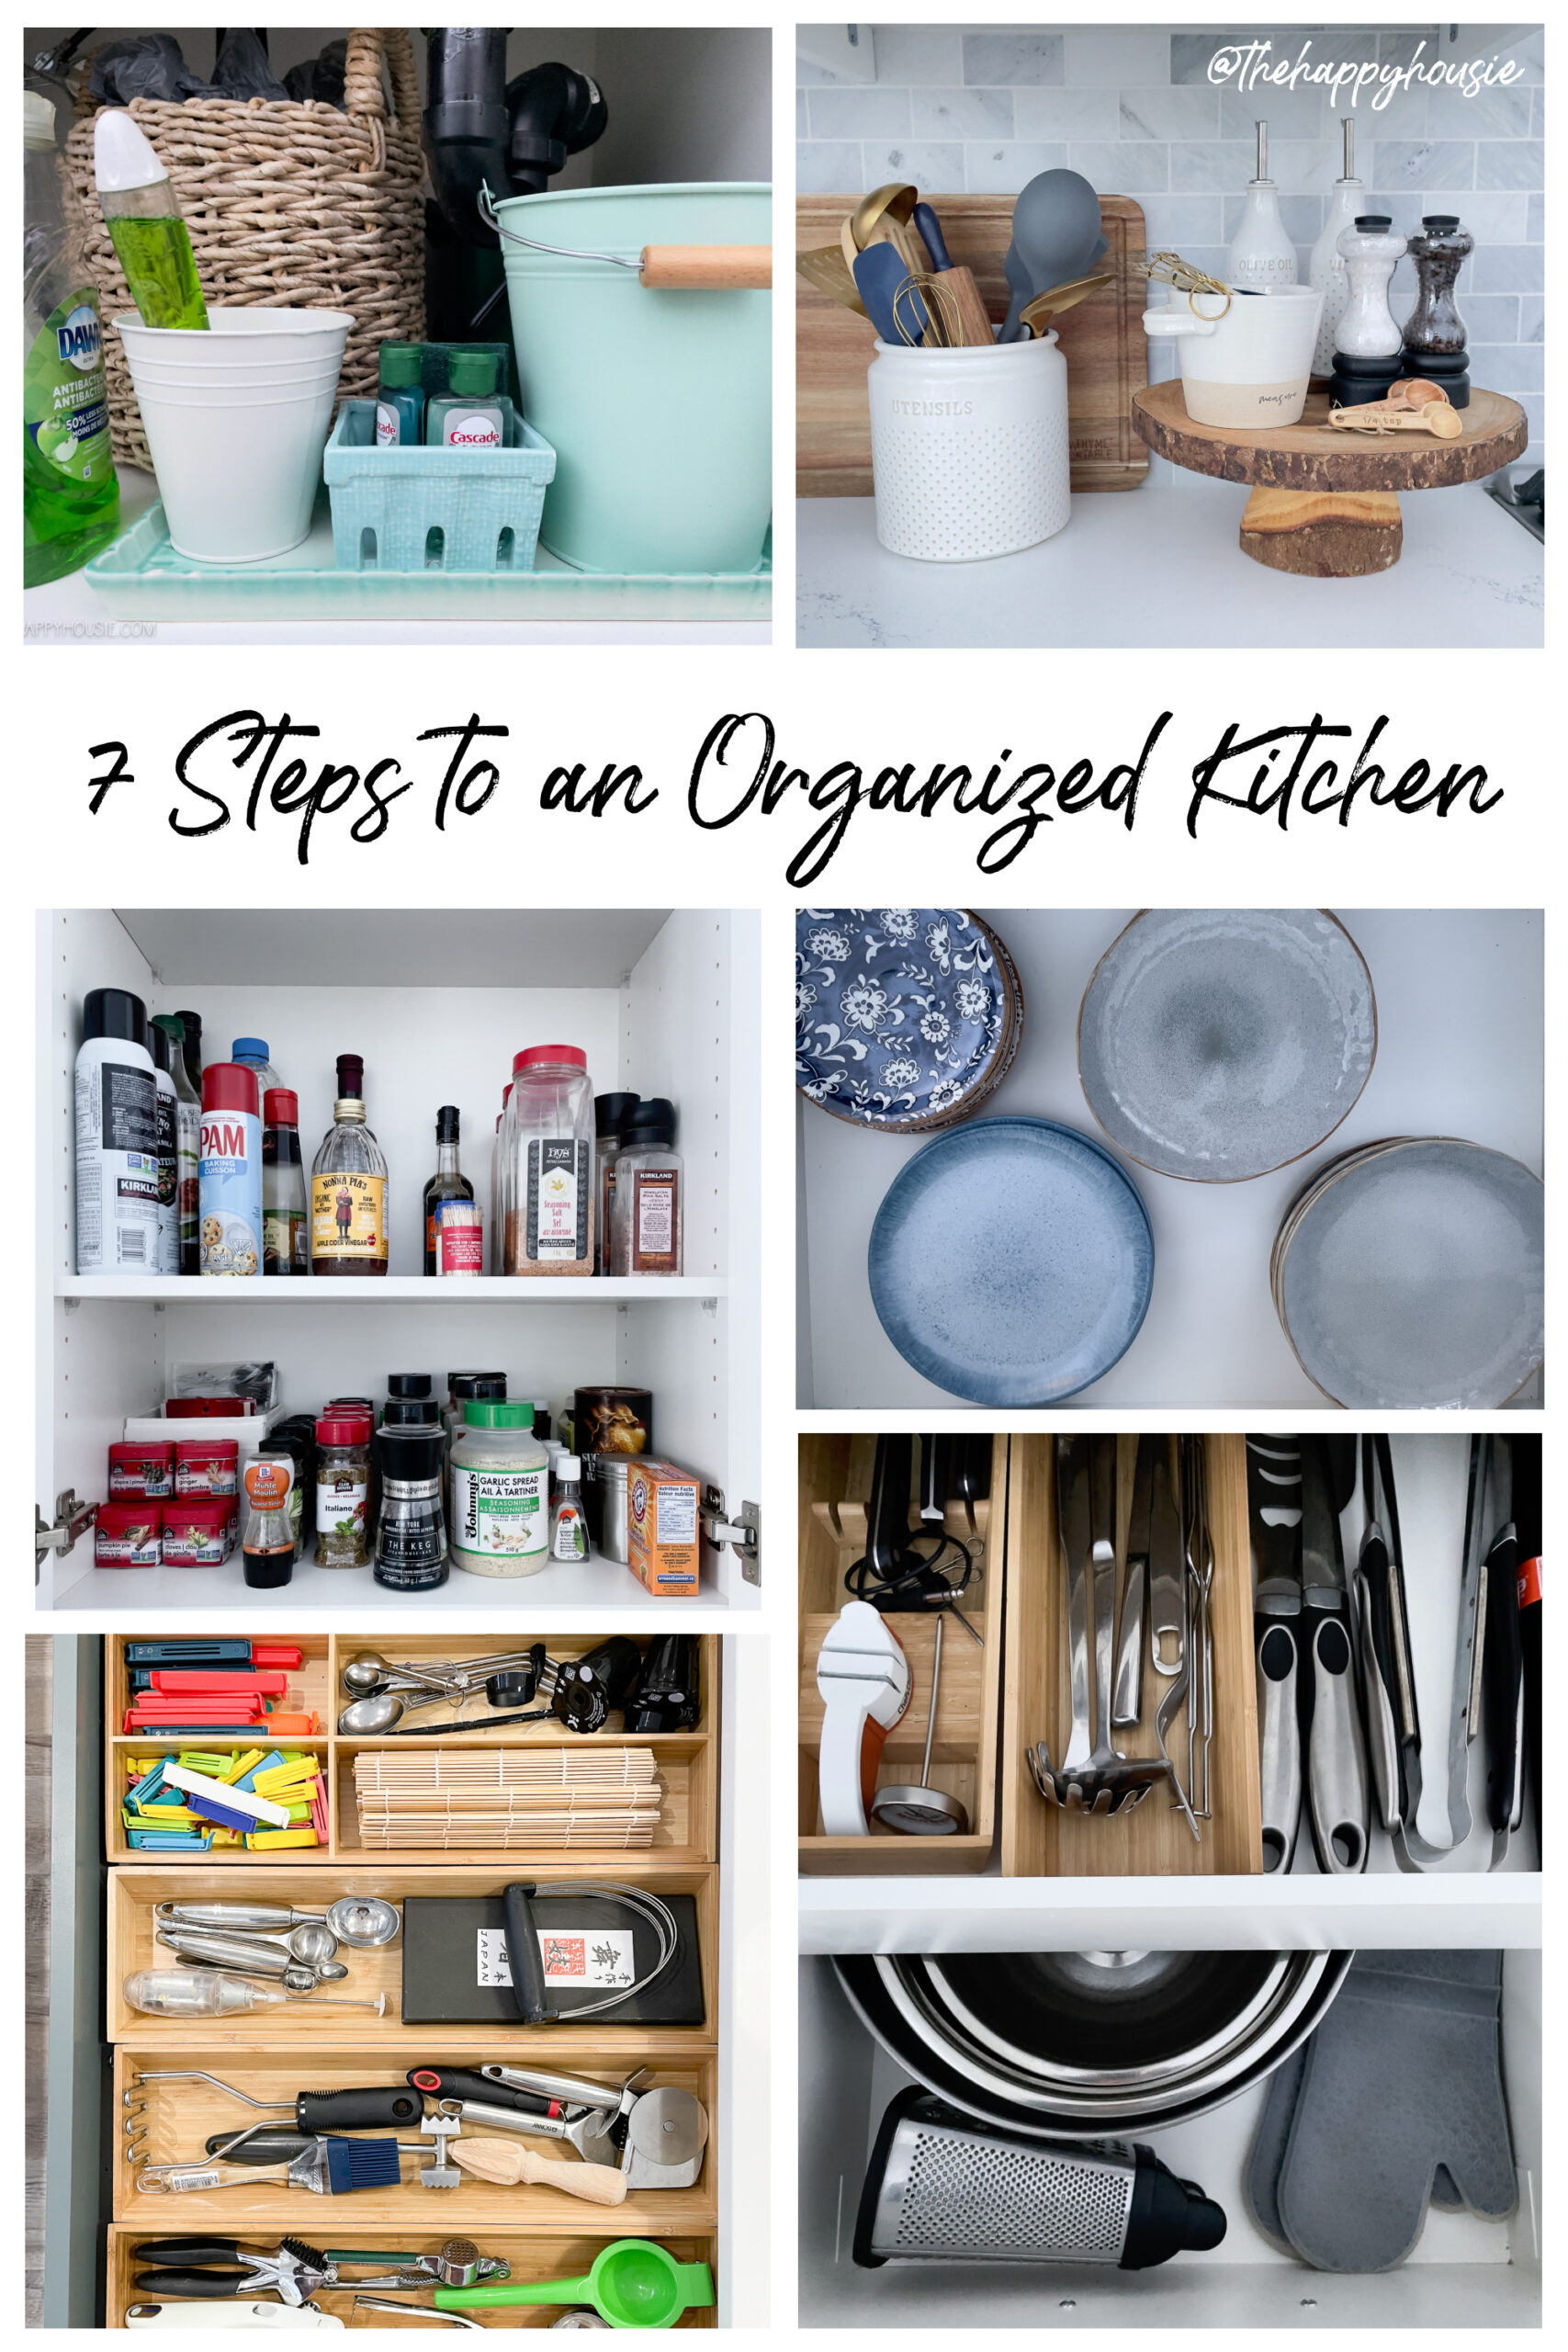 10 Best Kitchen Organization Ideas - How to Organize Your Kitchen